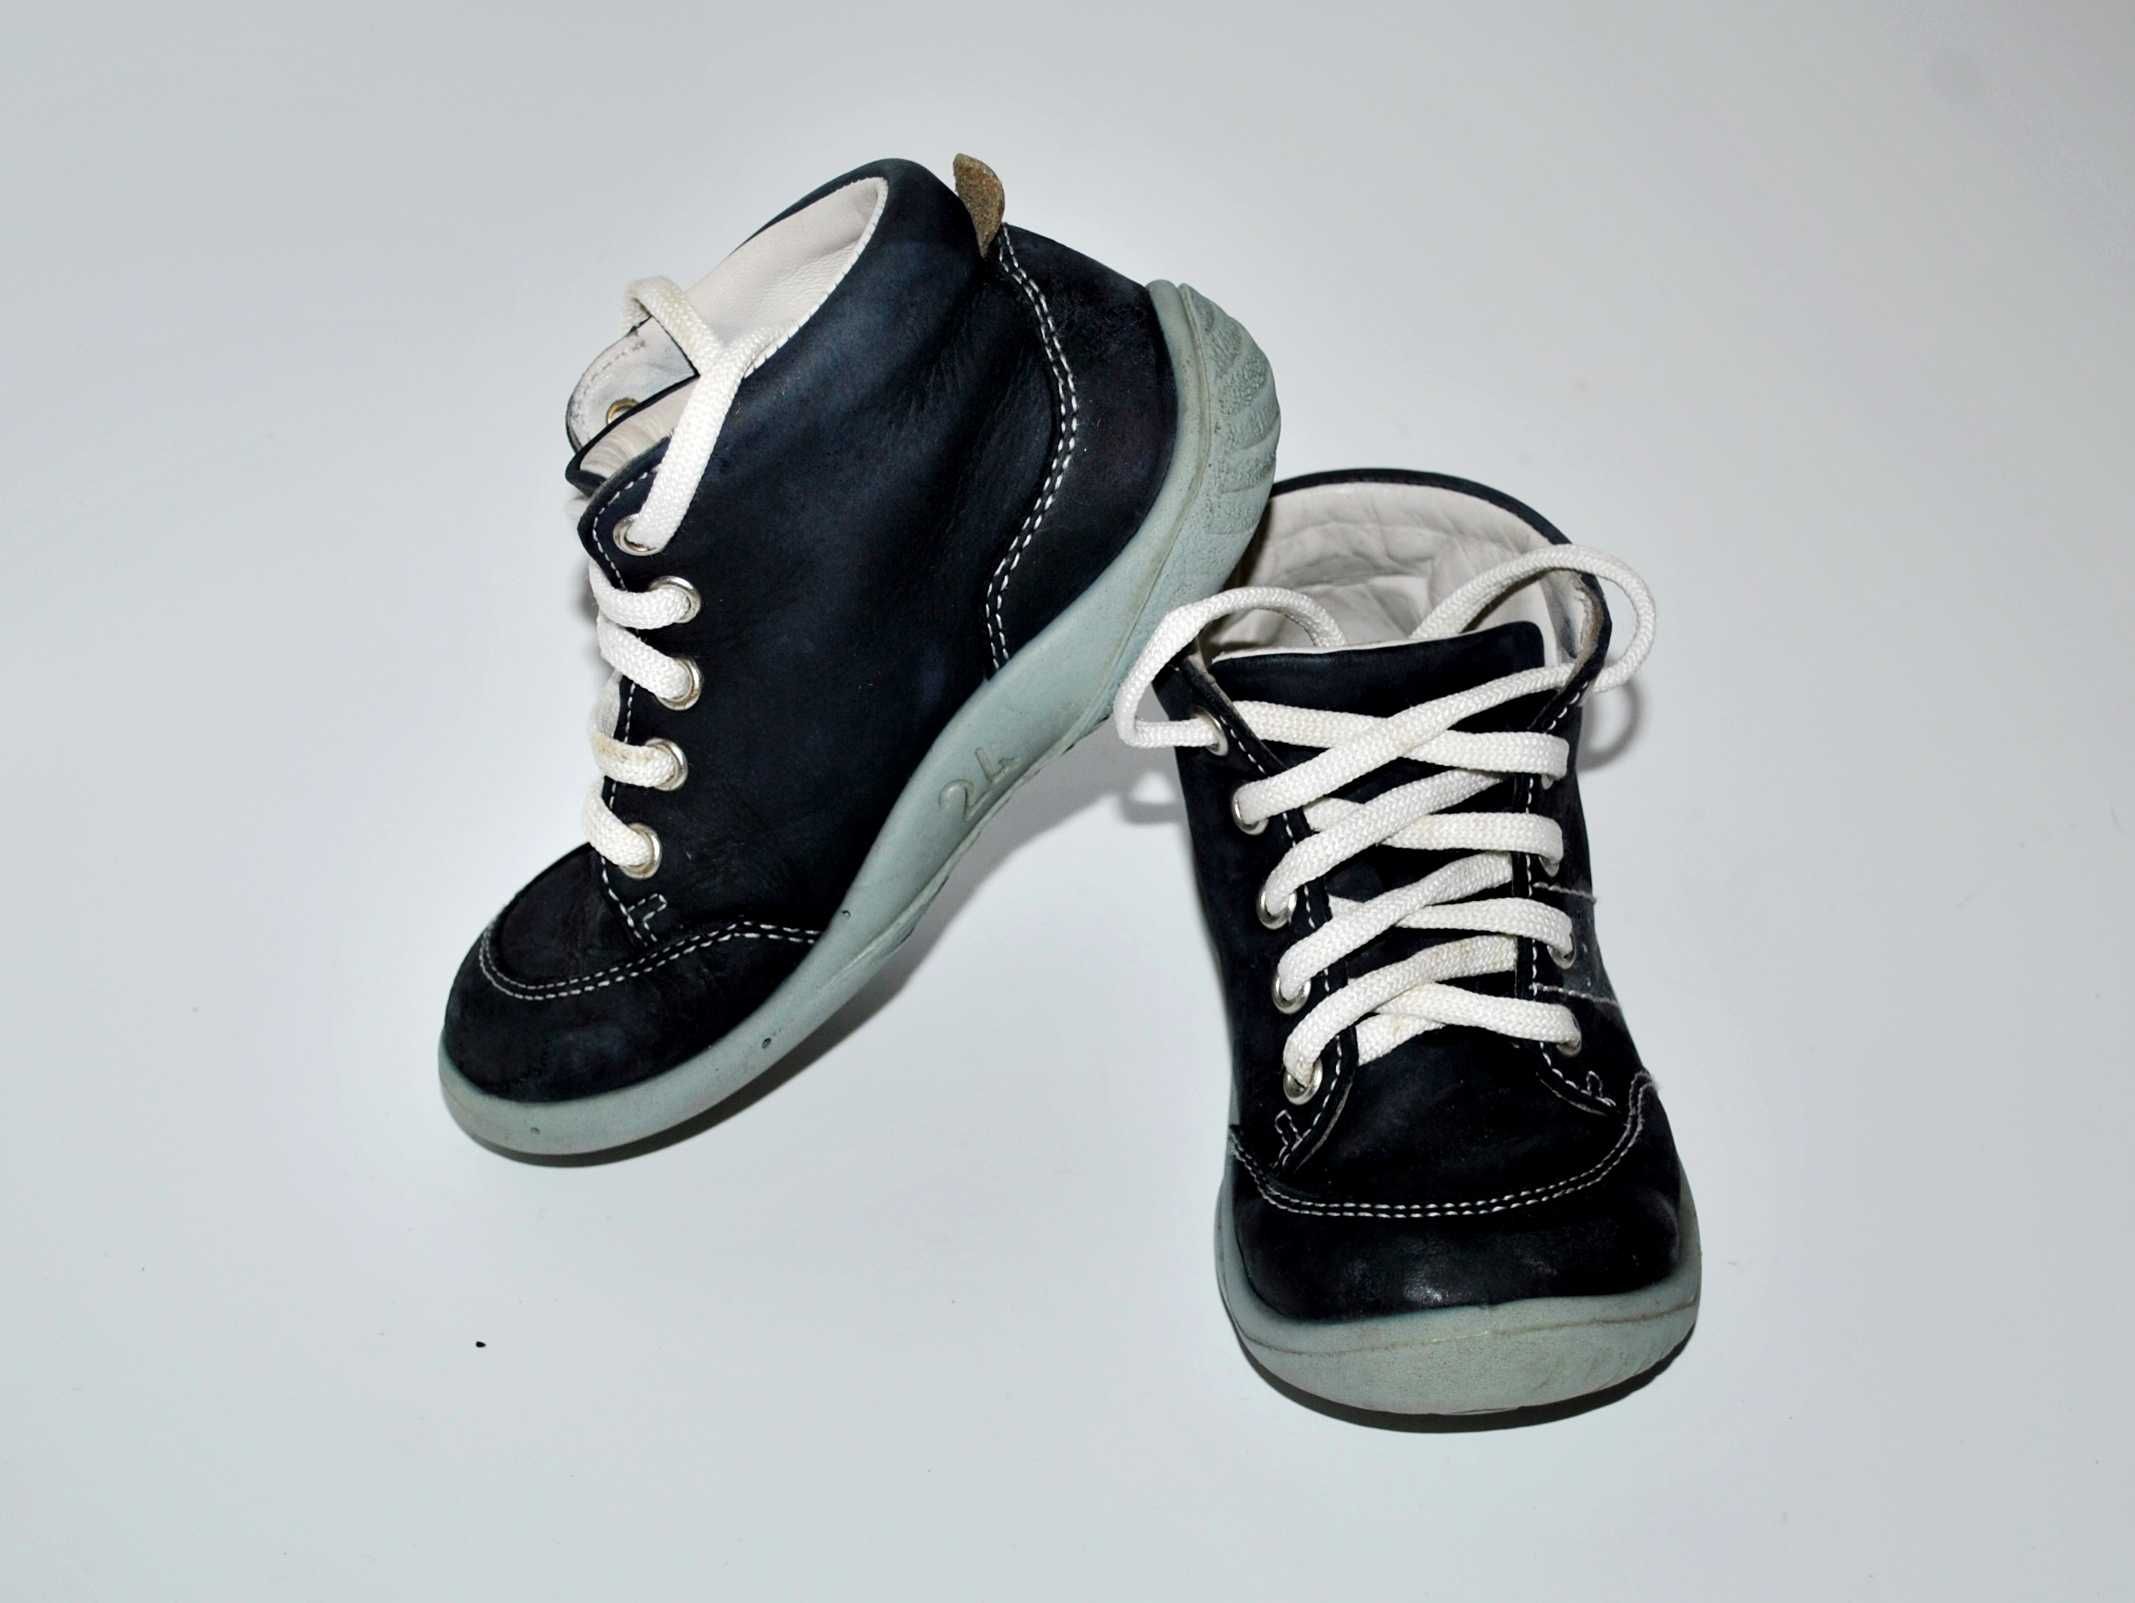 ботинки RICHTER Австрия  кроссовки кожаные ортопедические 15,5 см